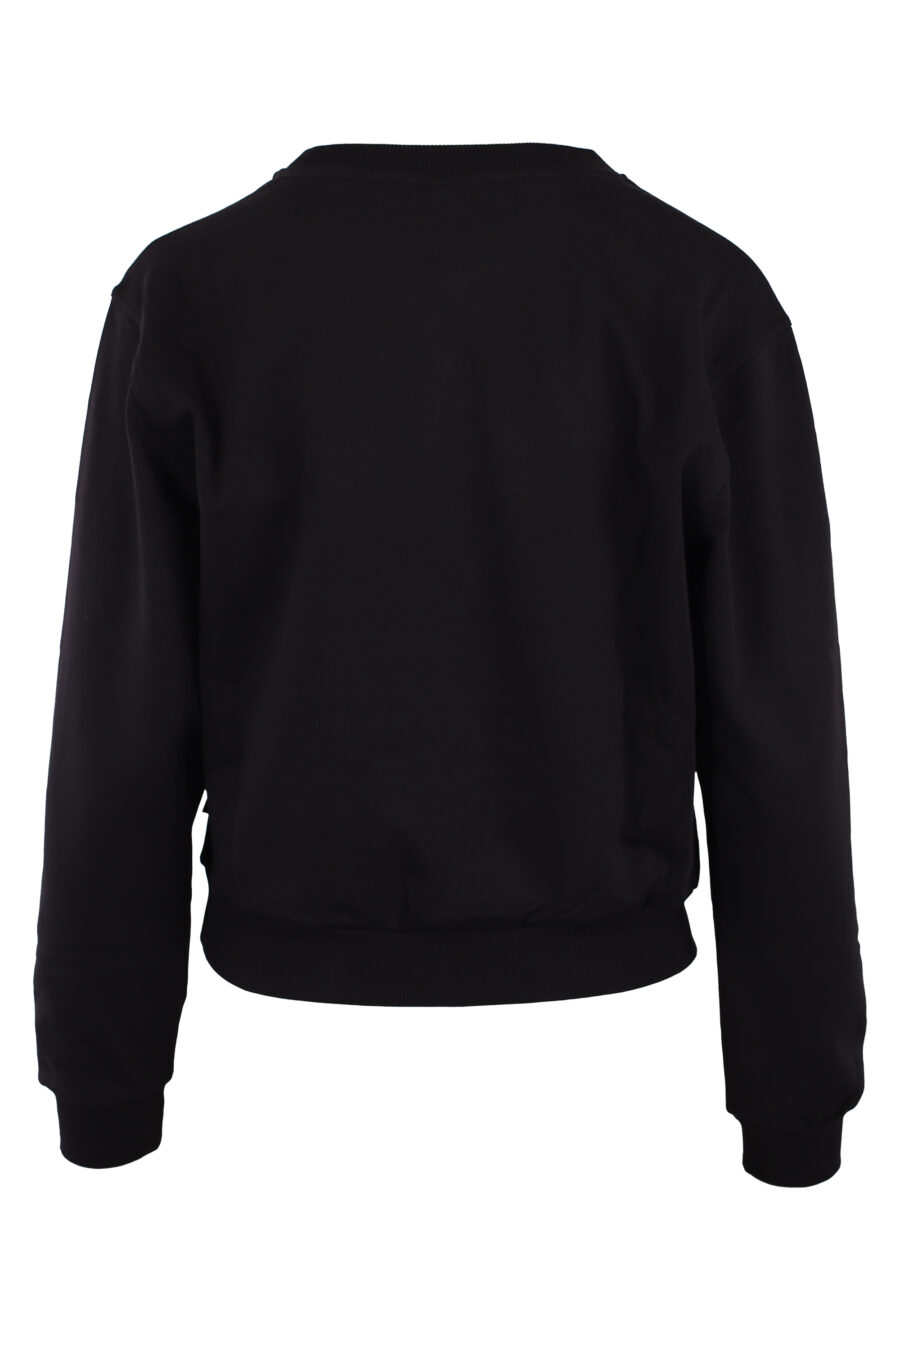 Schwarzes Sweatshirt mit kleinem Bärenlogo - IMG 6187